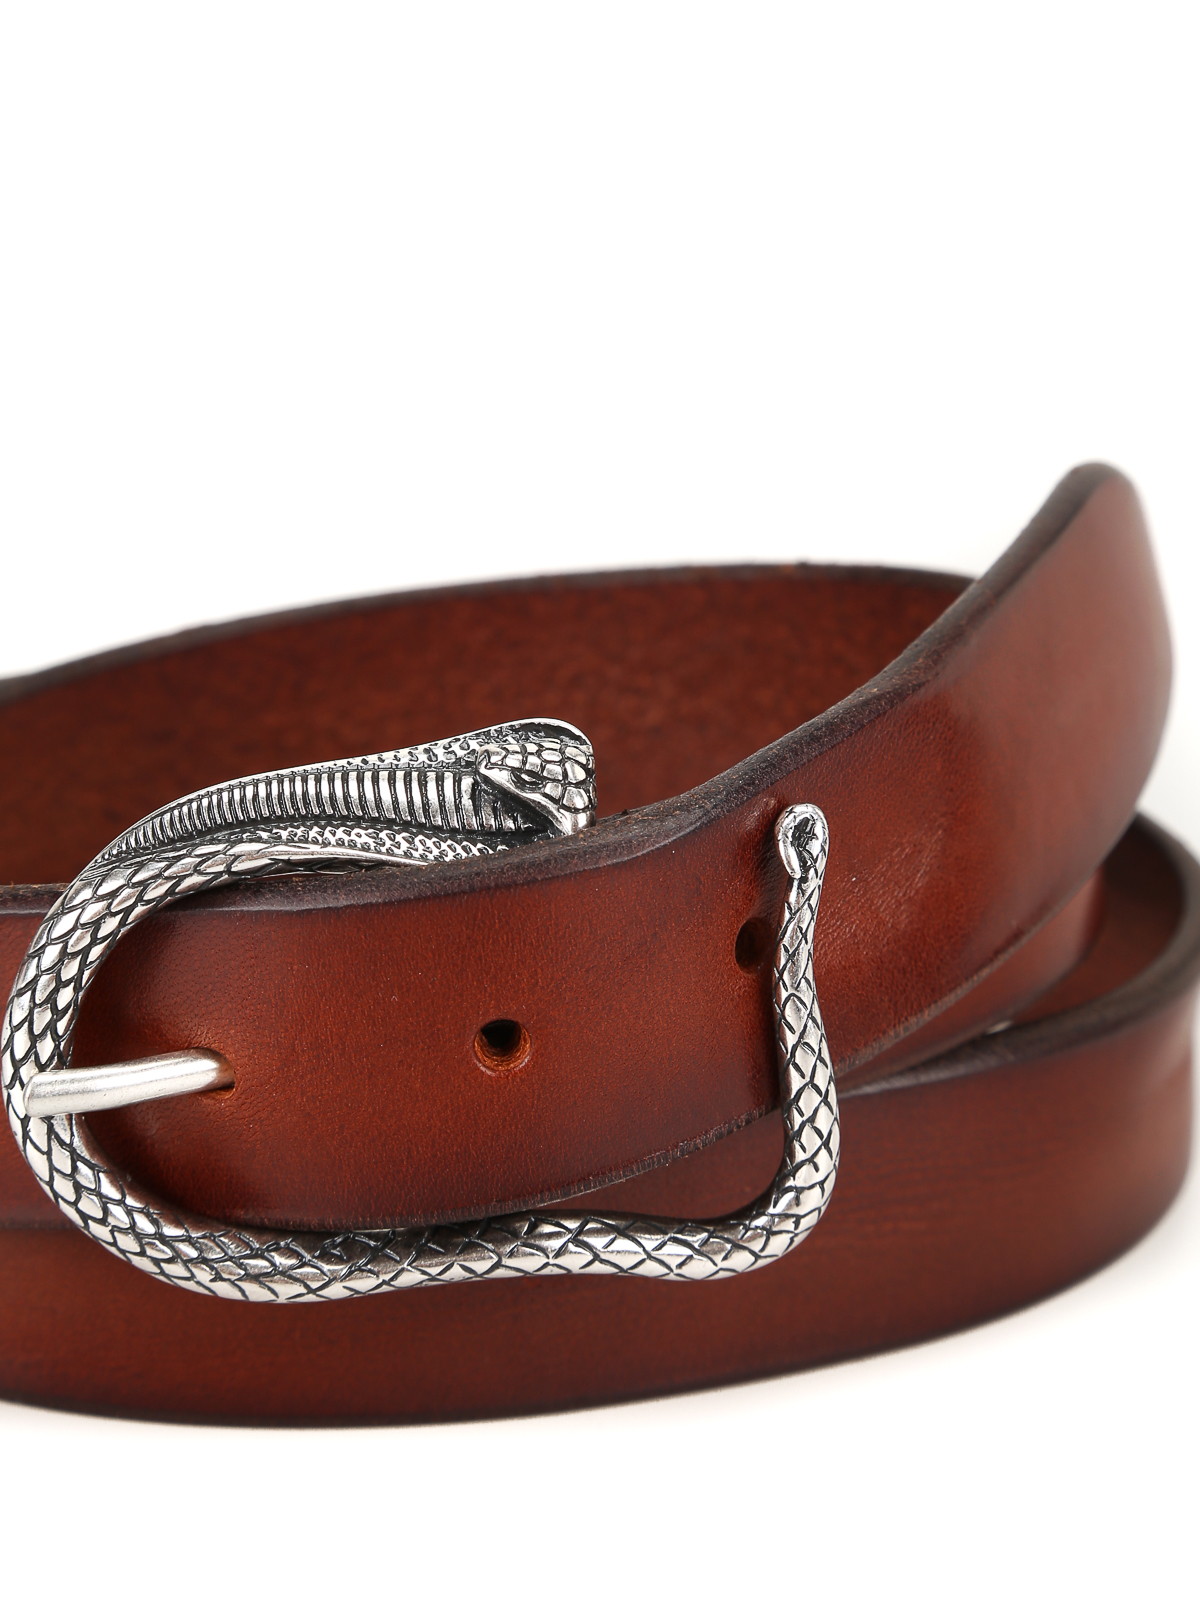 Belts Orciani - Snake buckled leather belt - U07711BULLSOFTBRUCIATO